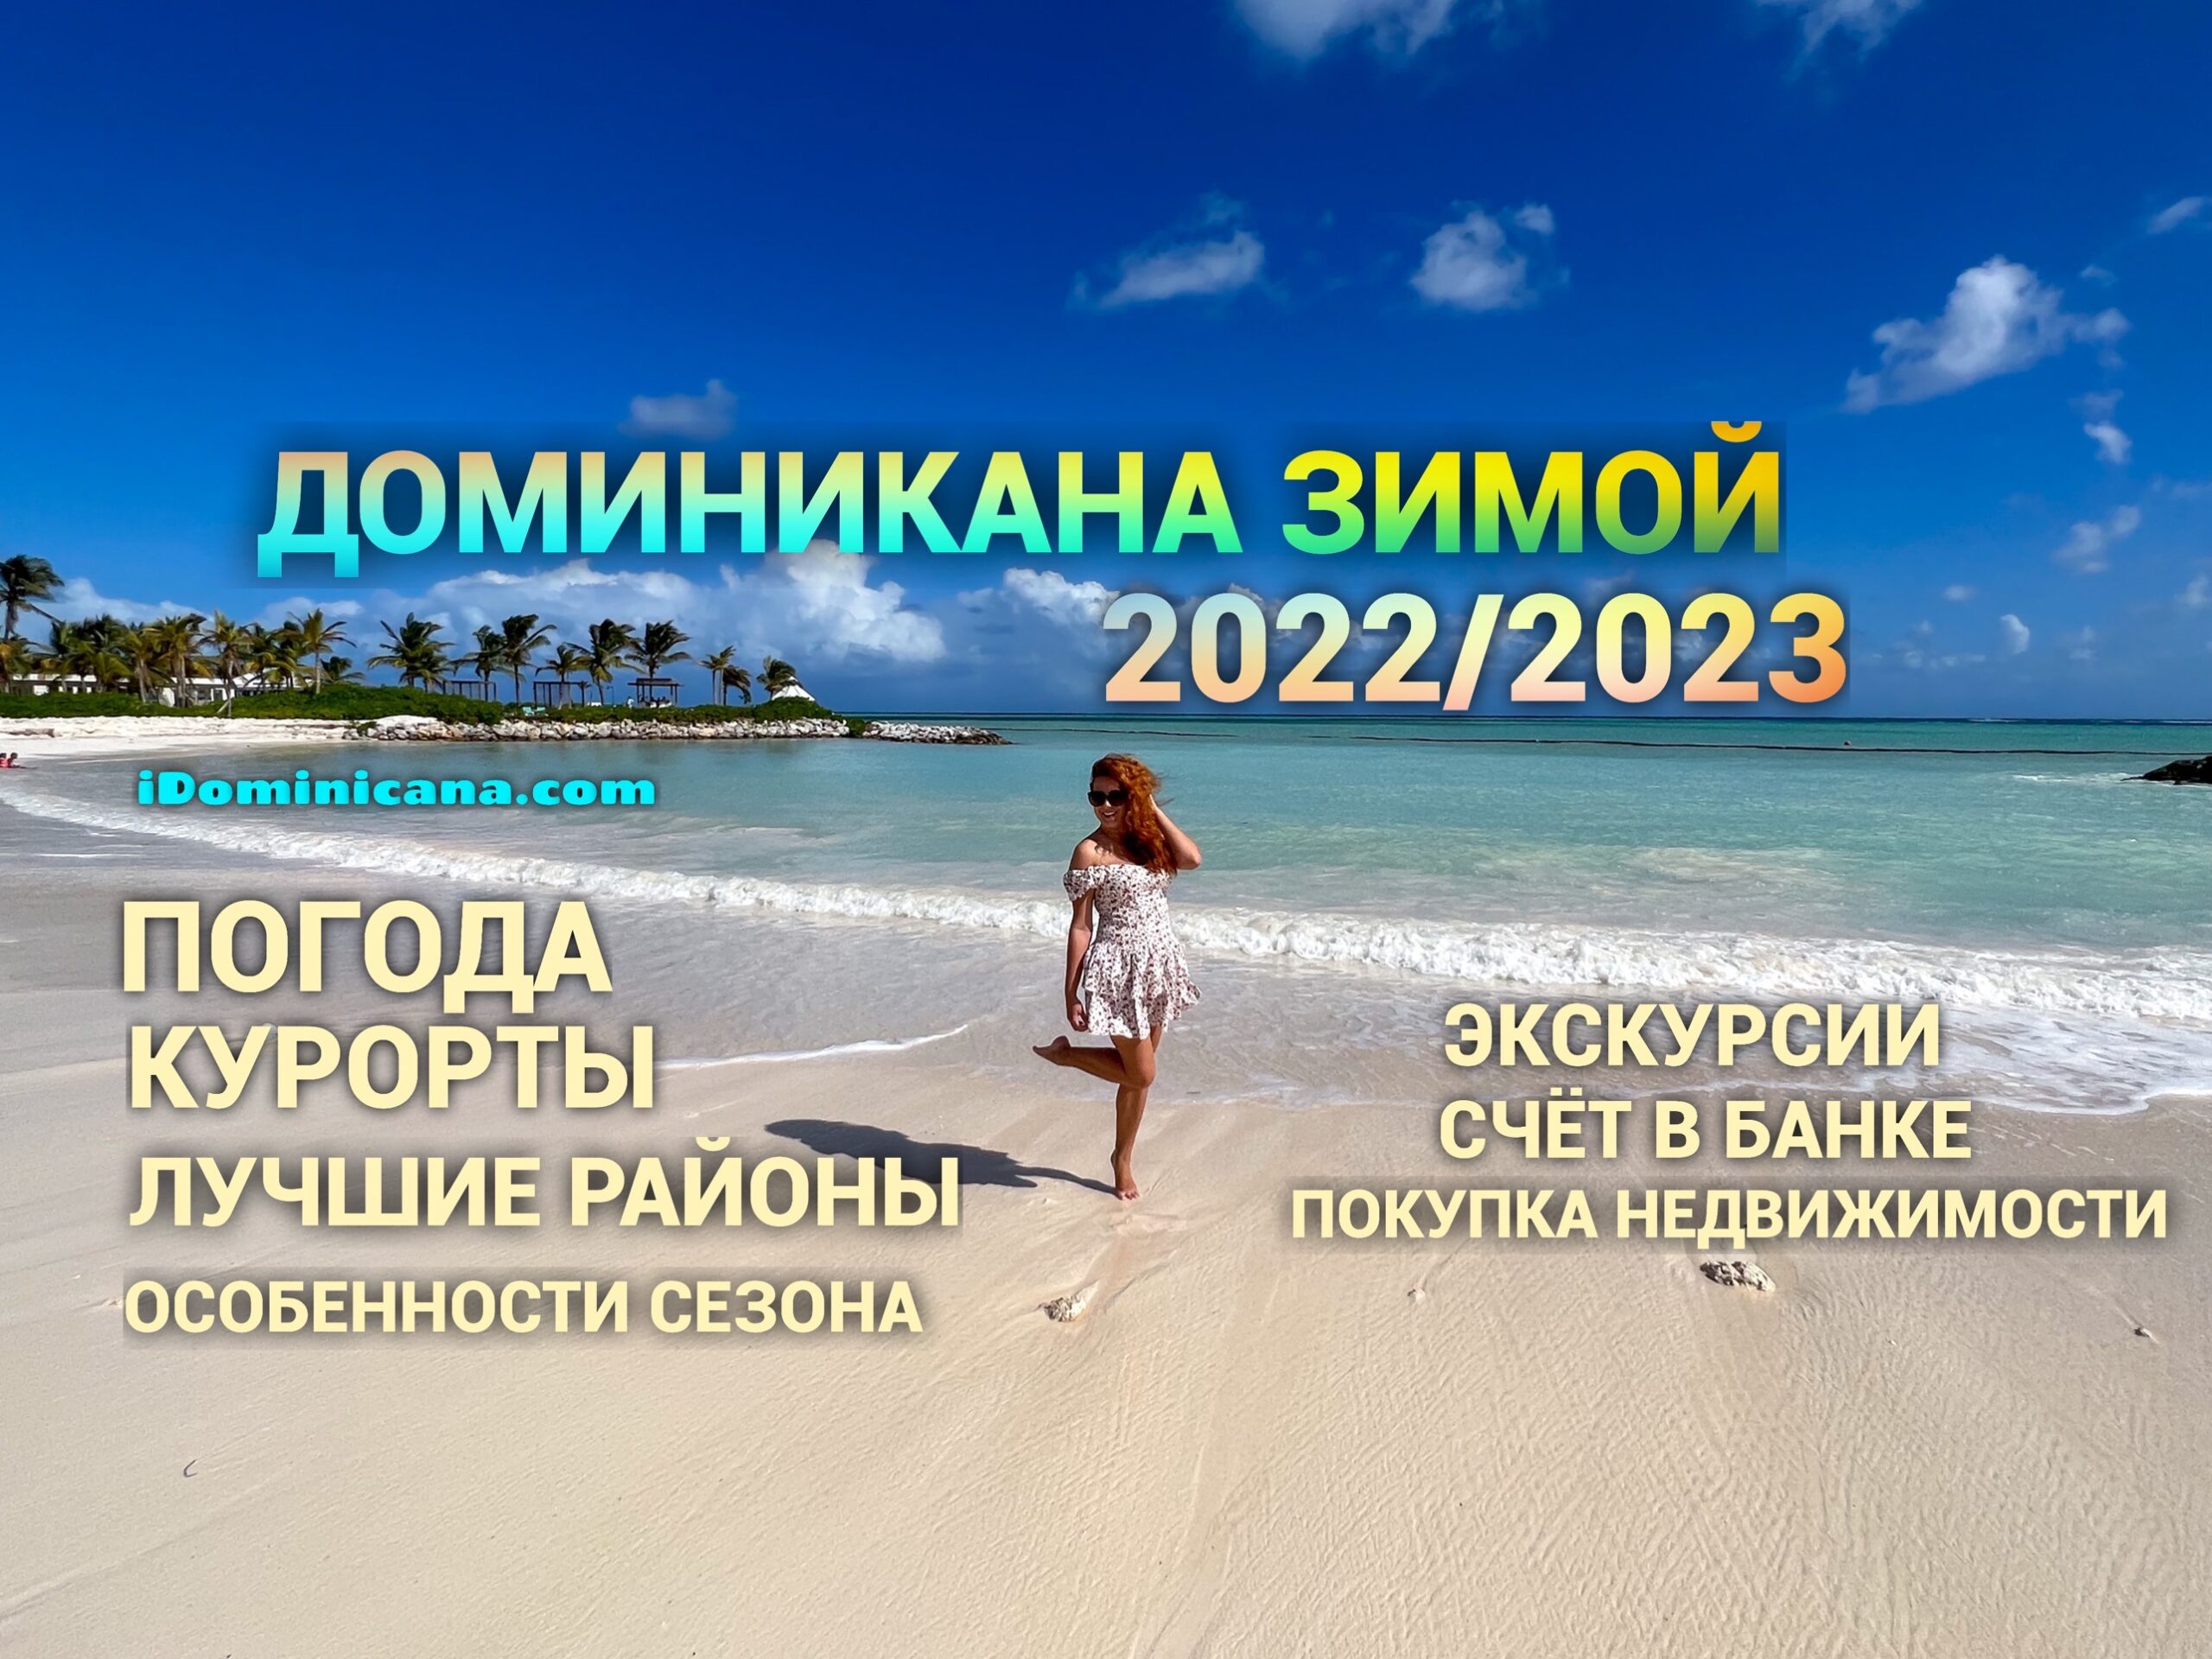 Доминикана зимой 2022/2023: все про сезон, погоду, курорты - ВИДЕО